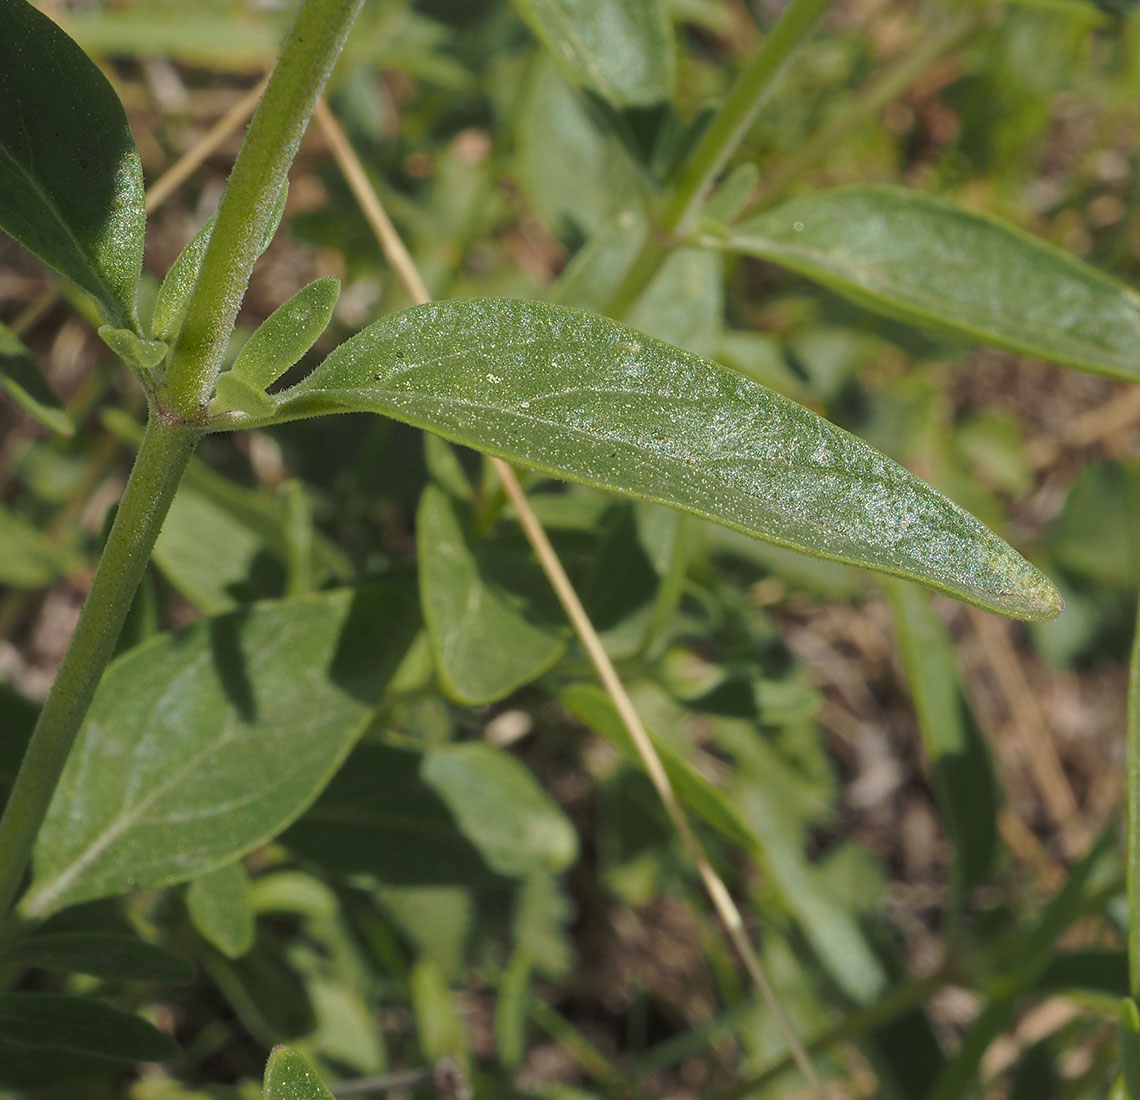 Monardella odoratissima ssp. pallida